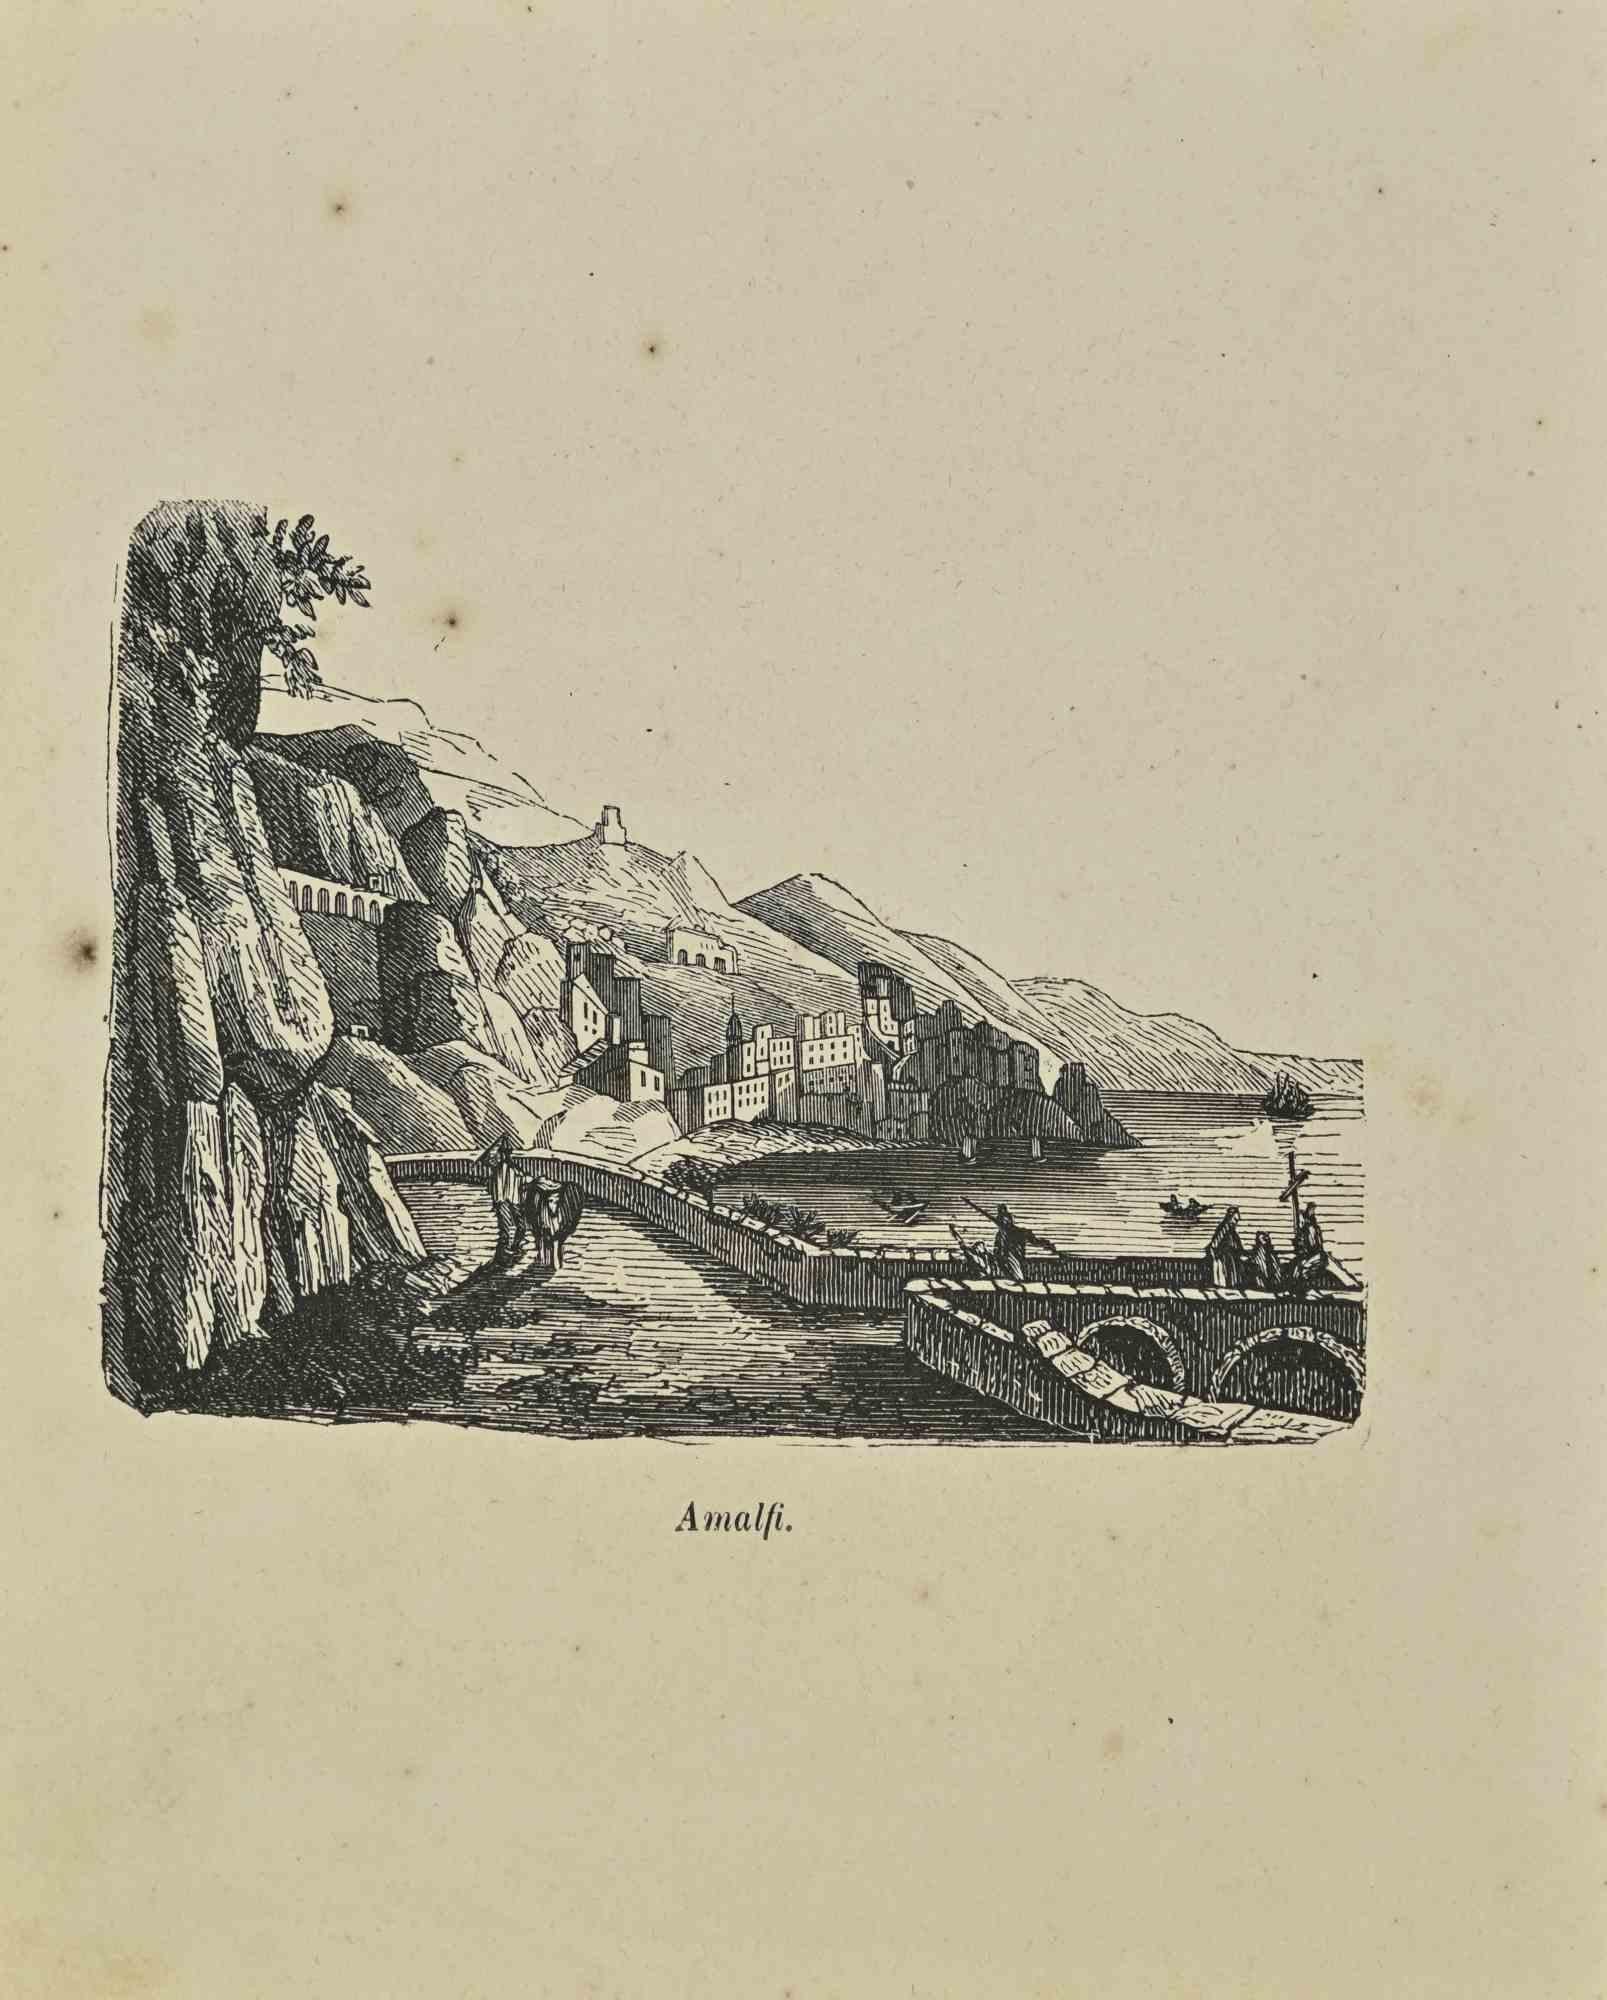 Uses and Customs - Amalfi - Lithograph - 1862